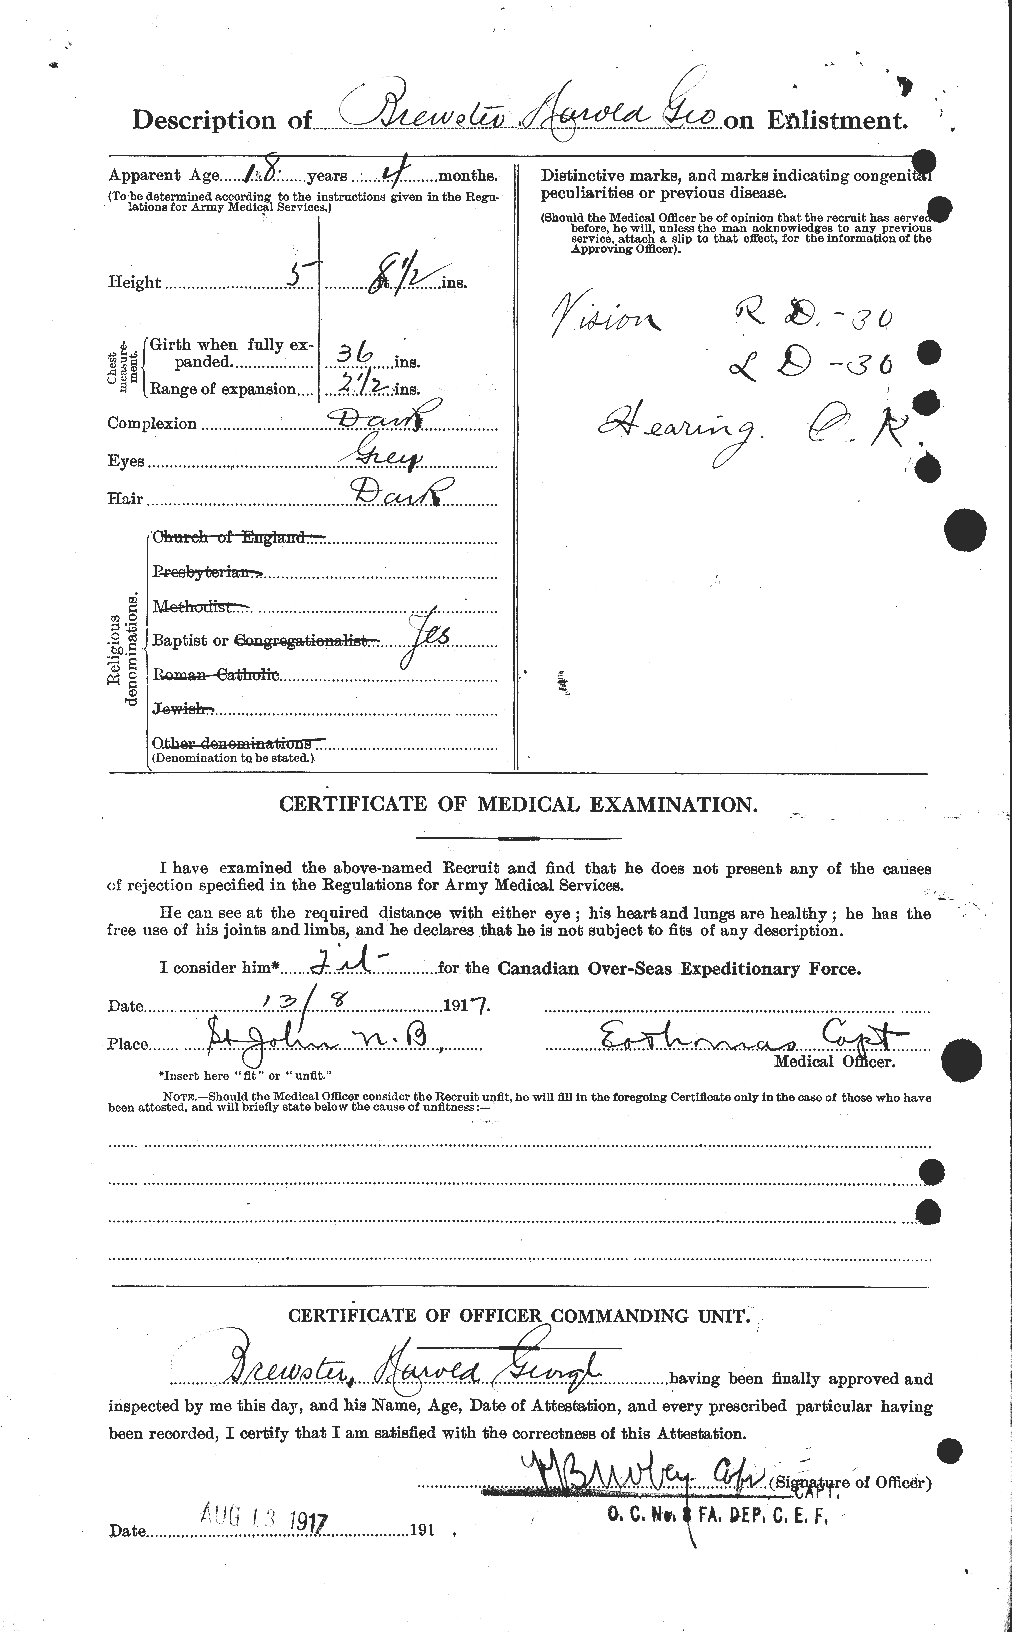 Dossiers du Personnel de la Première Guerre mondiale - CEC 260879b